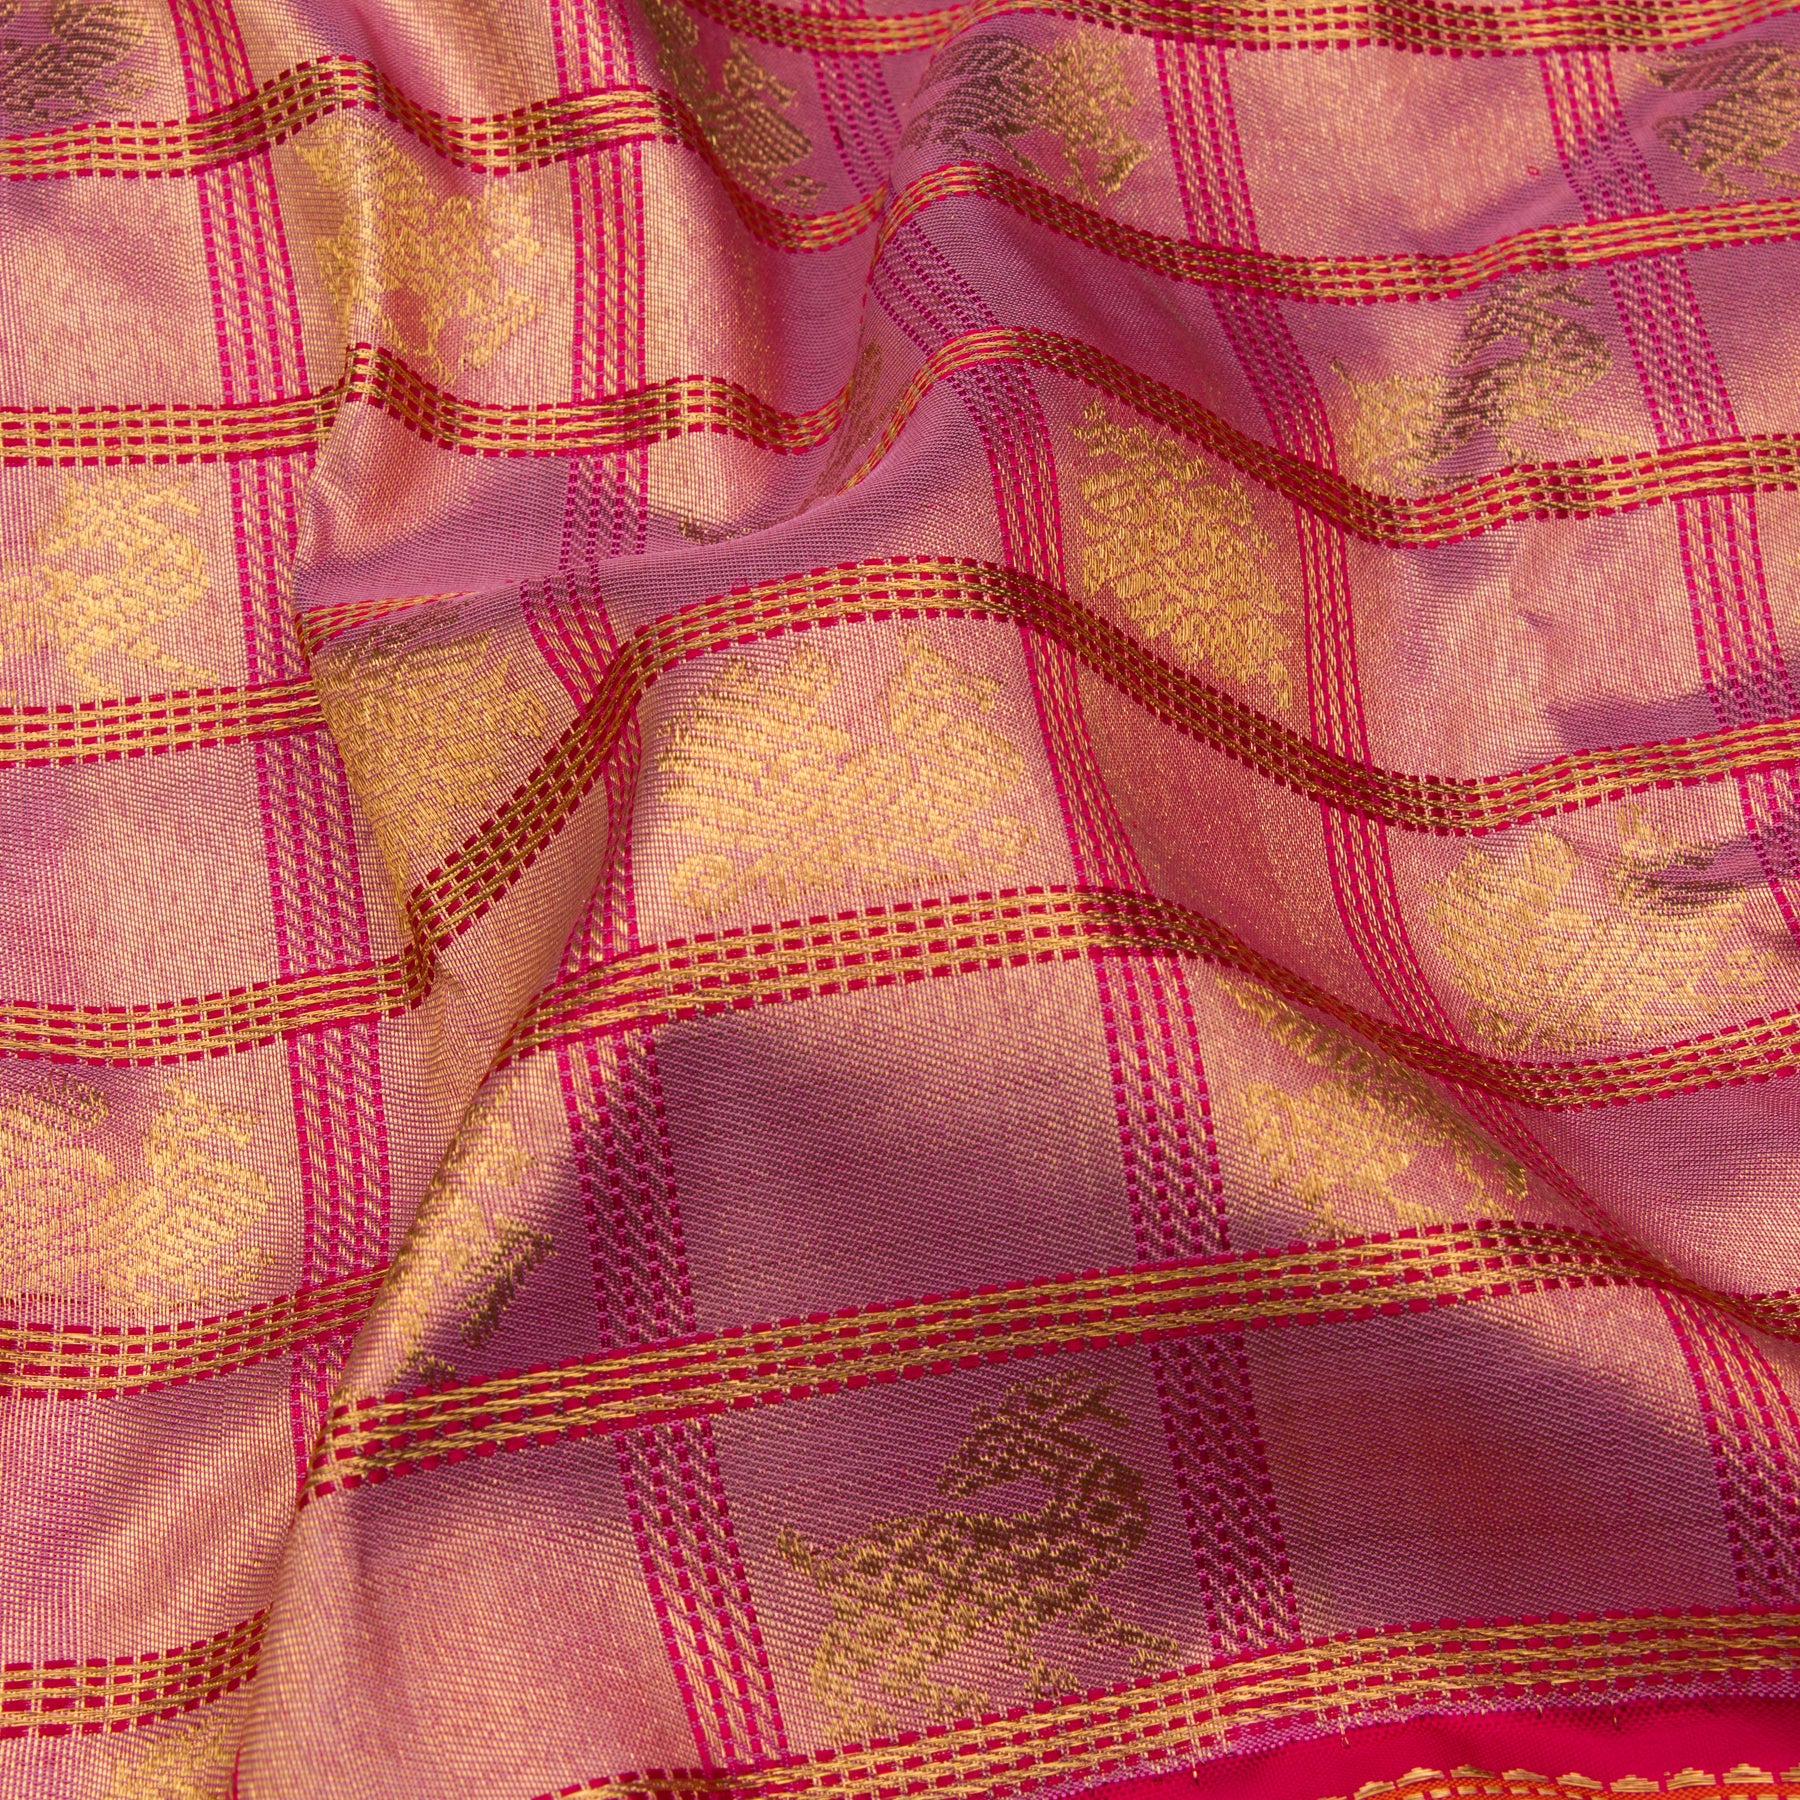 Kanakavalli Kanjivaram Silk Sari 23-041-HS001-10285 - Fabric View